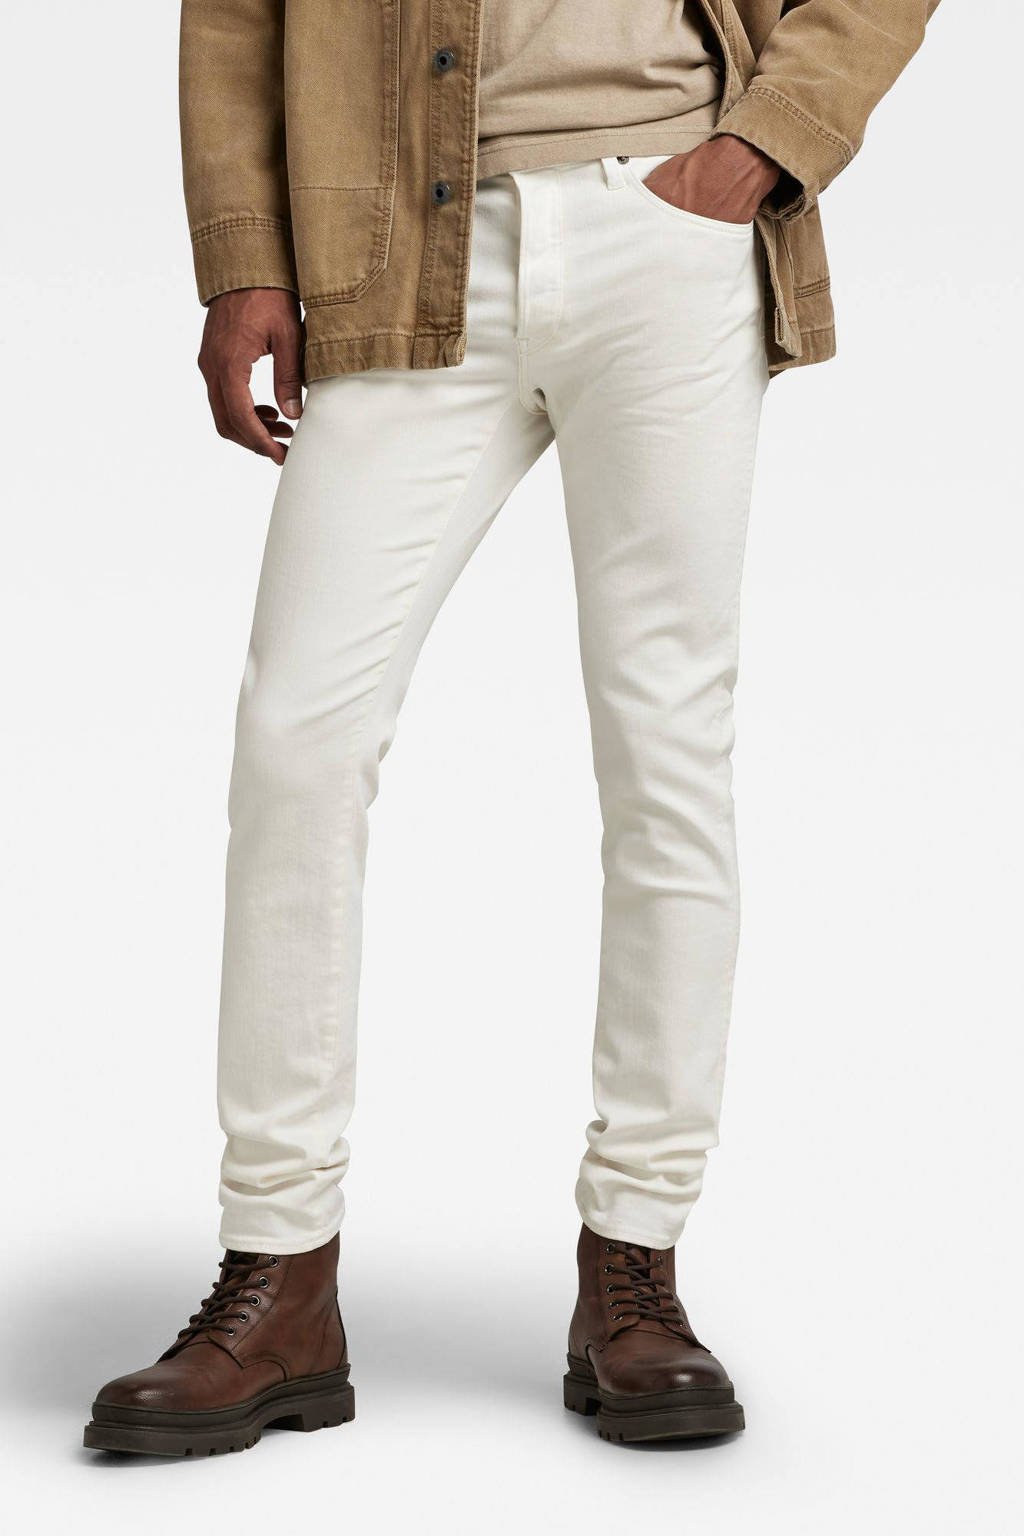 tijdelijk overzien Zullen G-Star RAW 3301 slim fit jeans g006 white garment dyed | wehkamp